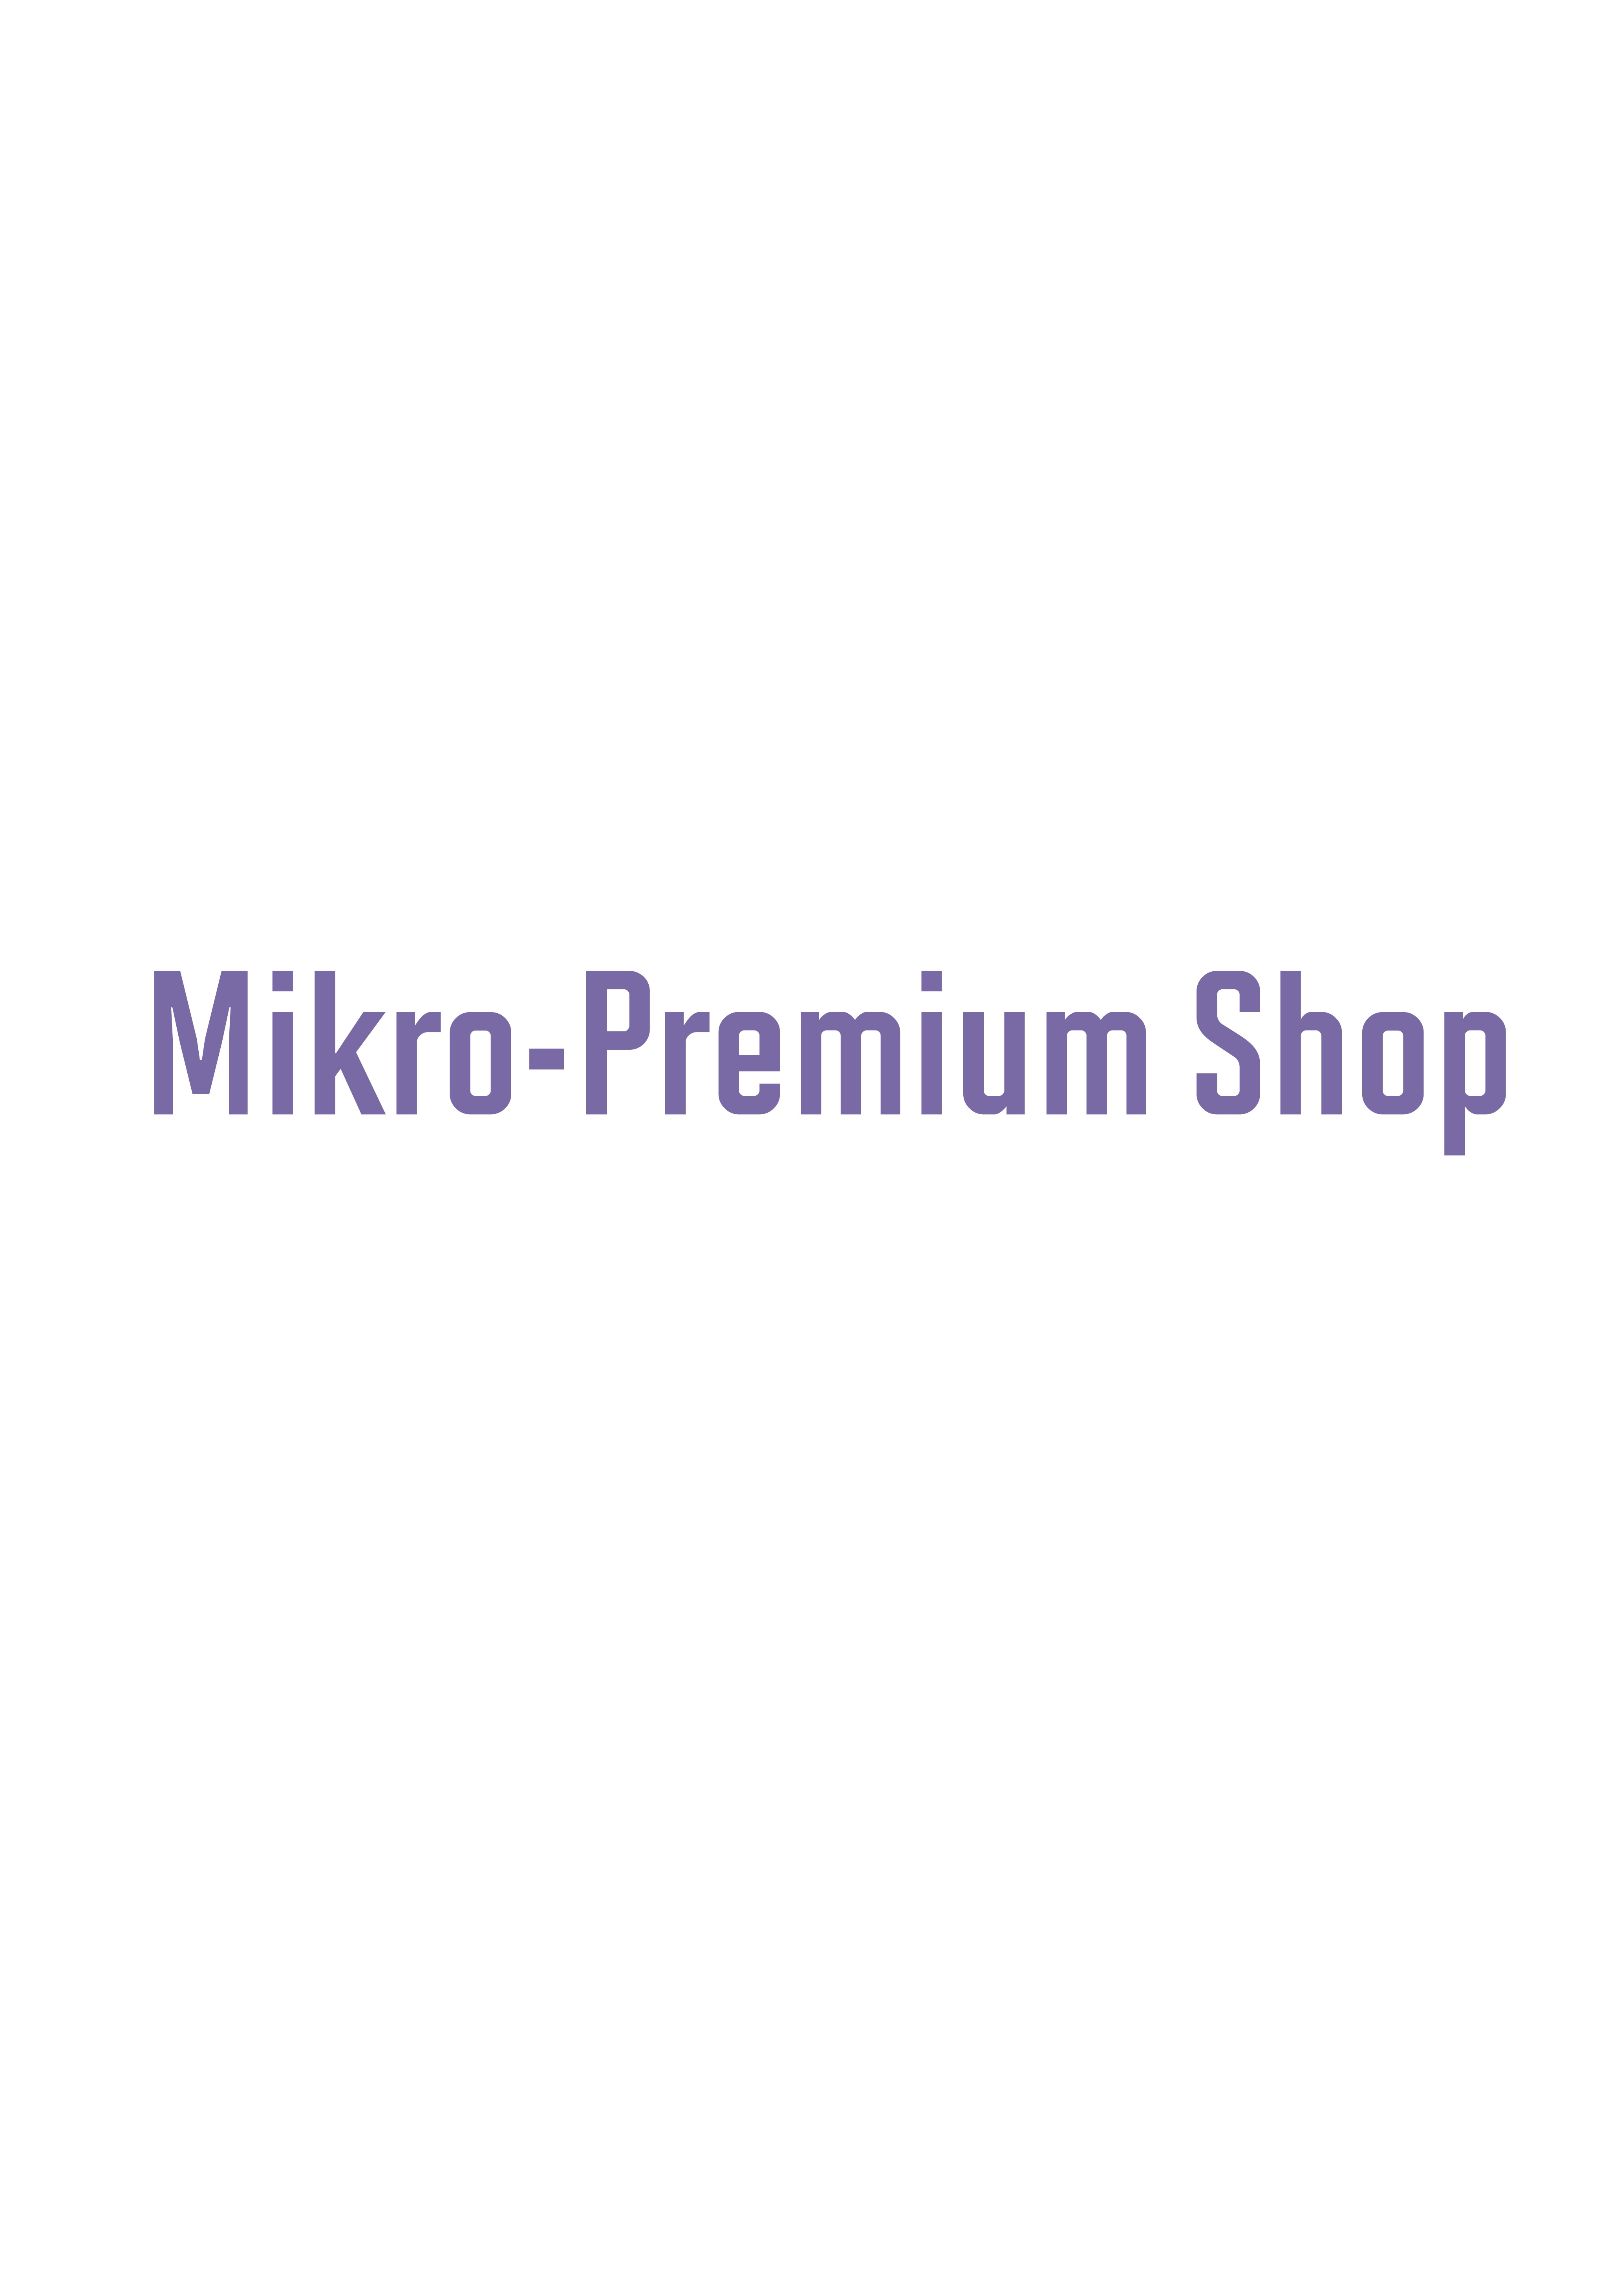 11/11(土) 追加抽選】Mikro-Premium Shop @ 渋谷モディのチケット情報